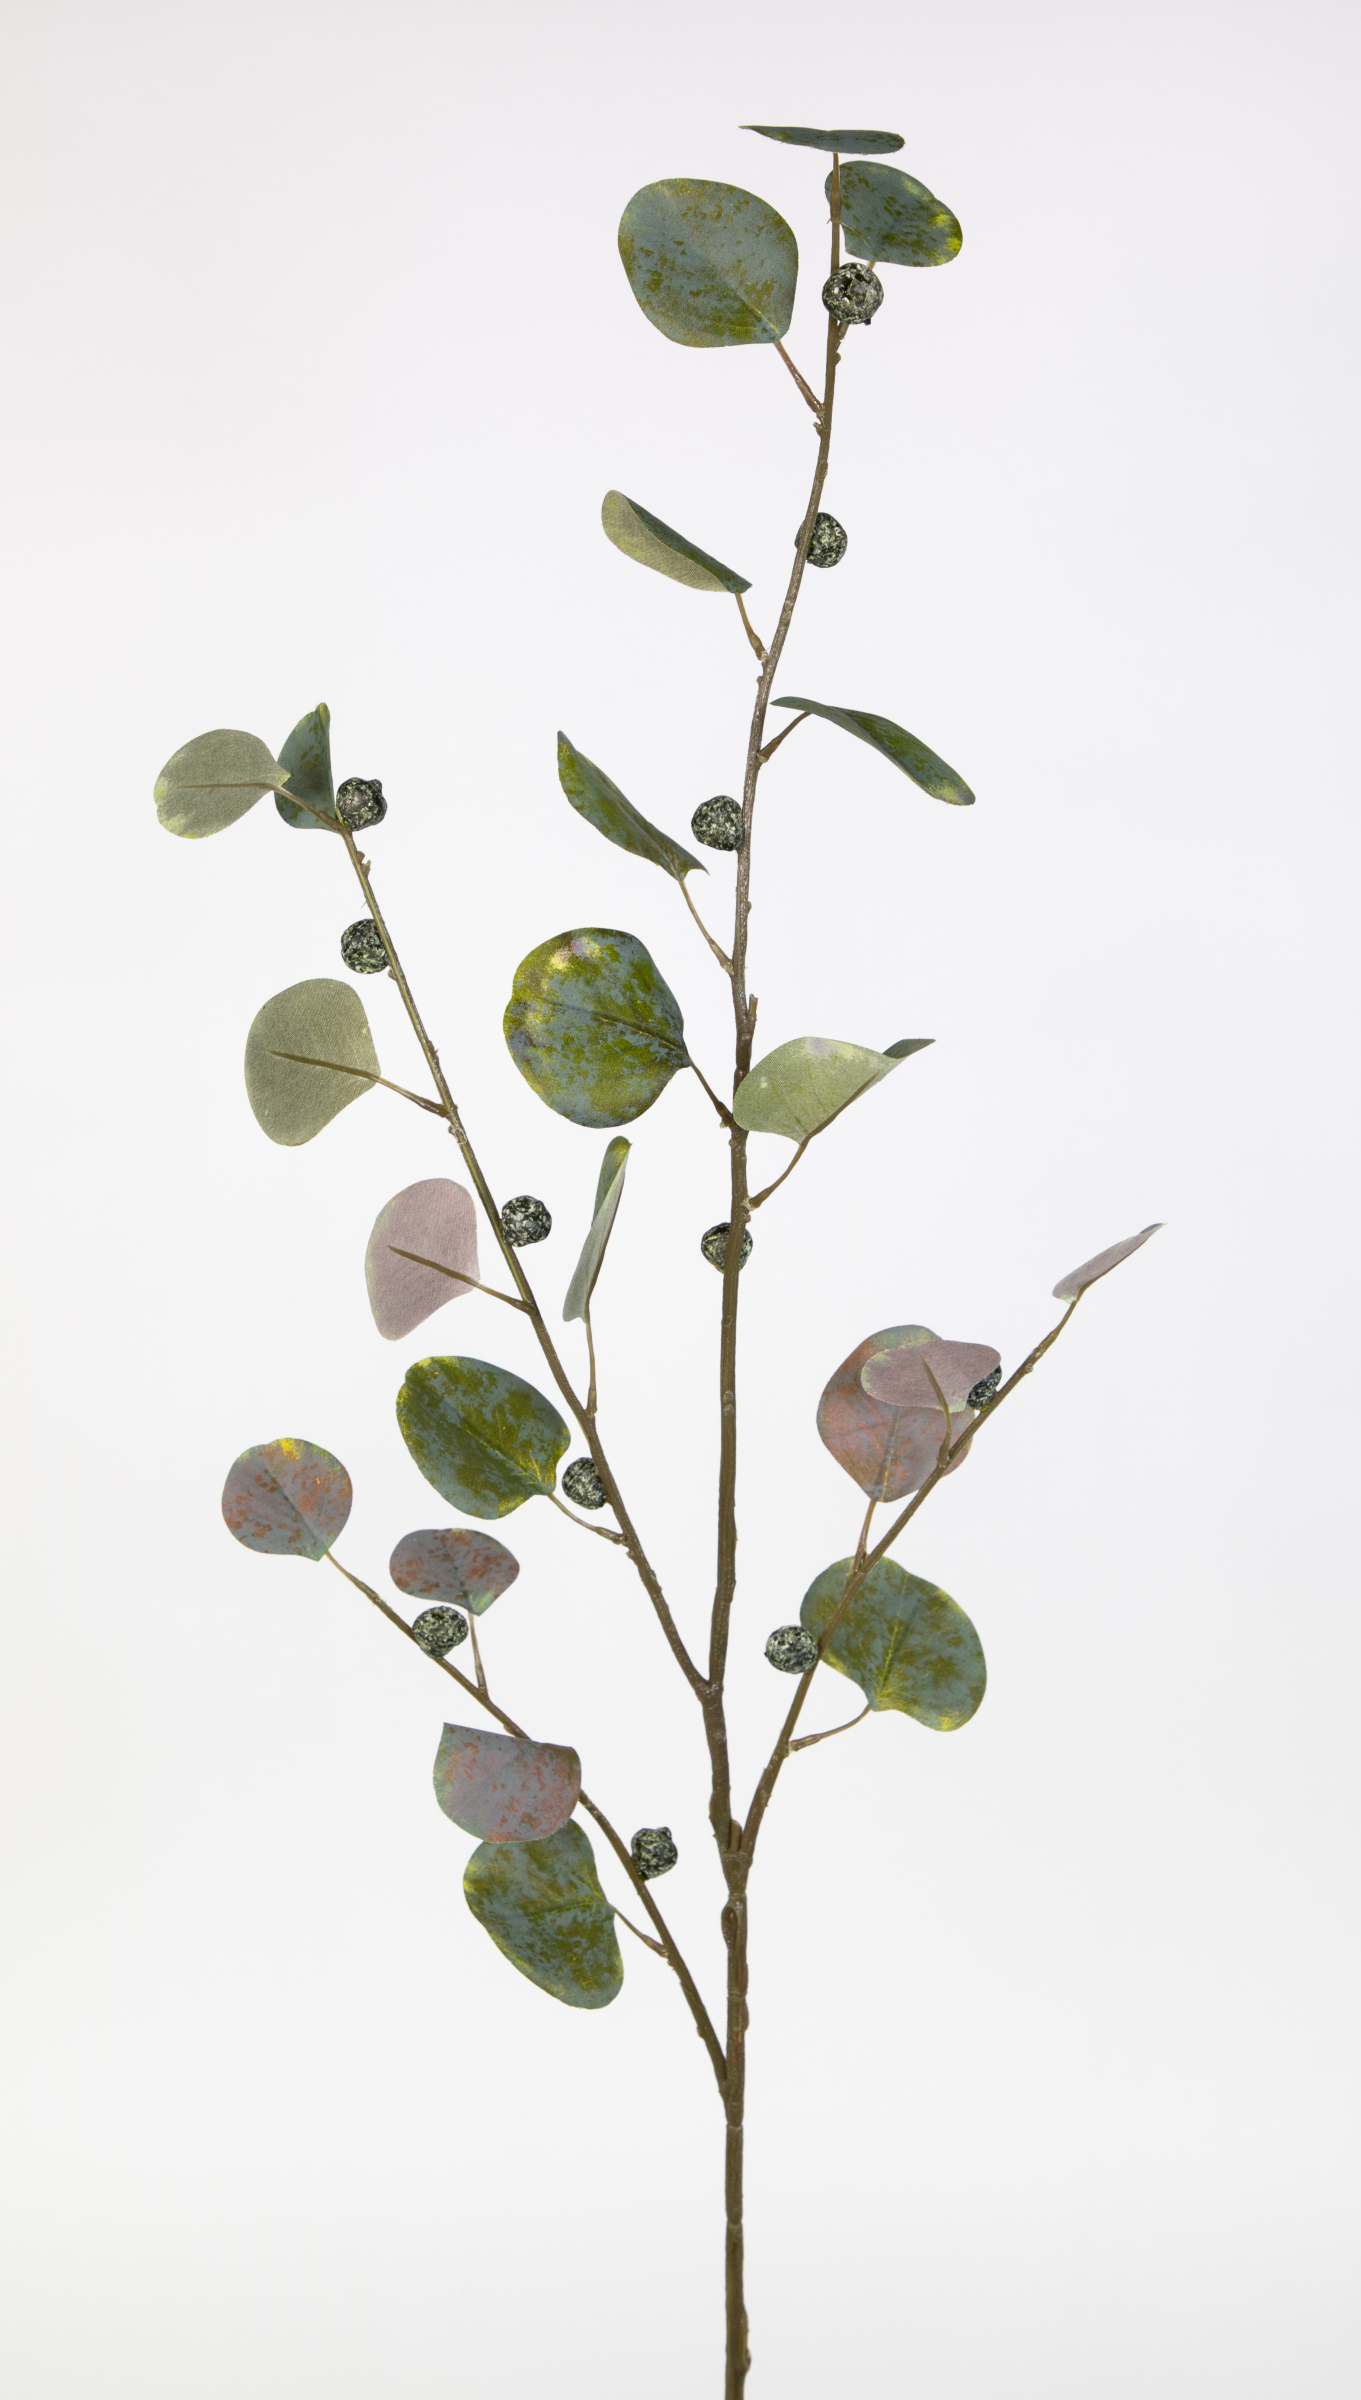 Eukalyptuszweig mit Früchten 110cm künstliche Zweige Kunstzweig Eukalyptus grün JA künstlicher